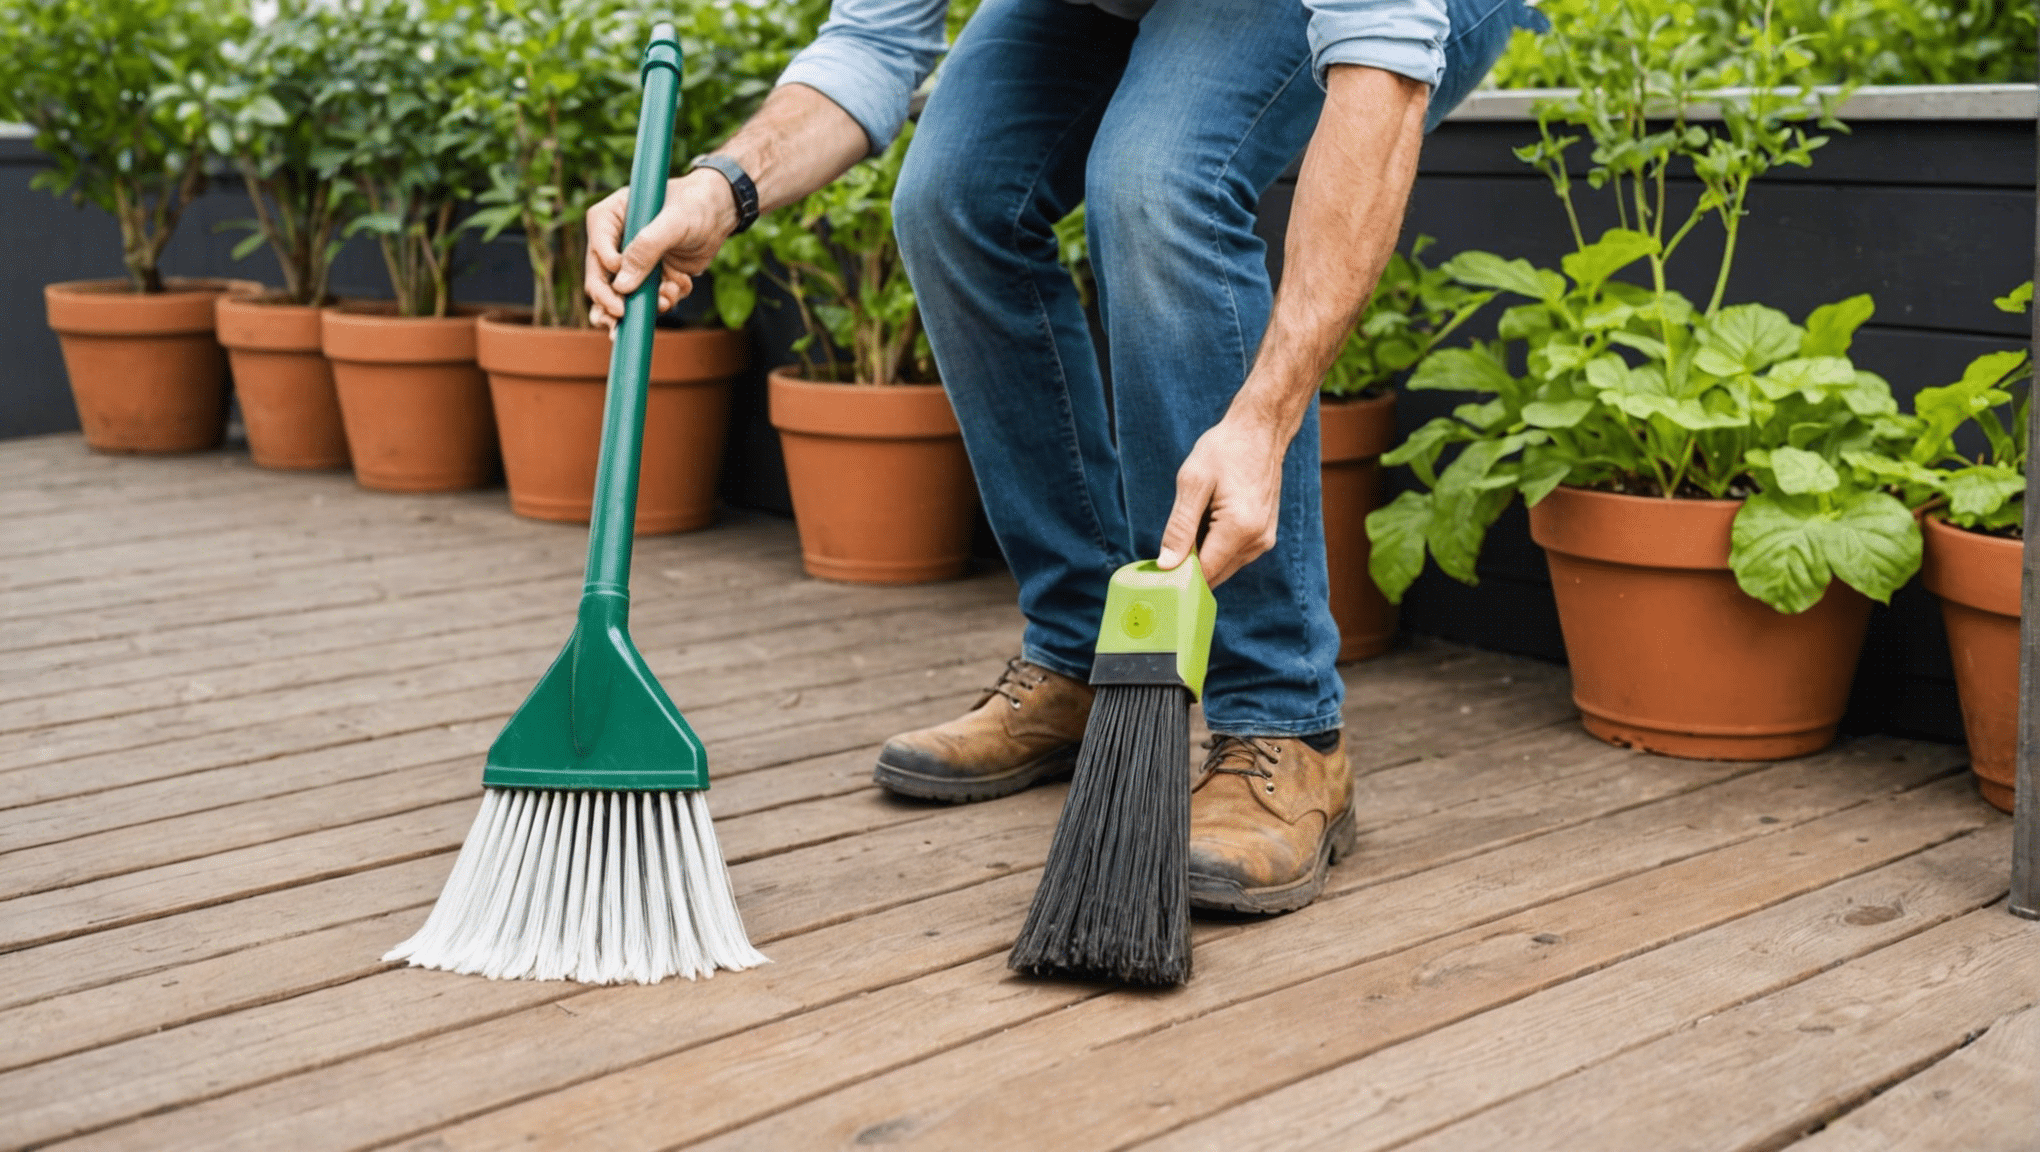 découvrez comment nettoyer efficacement votre terrasse avec 4 solutions naturelles anti-mousse pour un entretien écologique et sans produits chimiques.